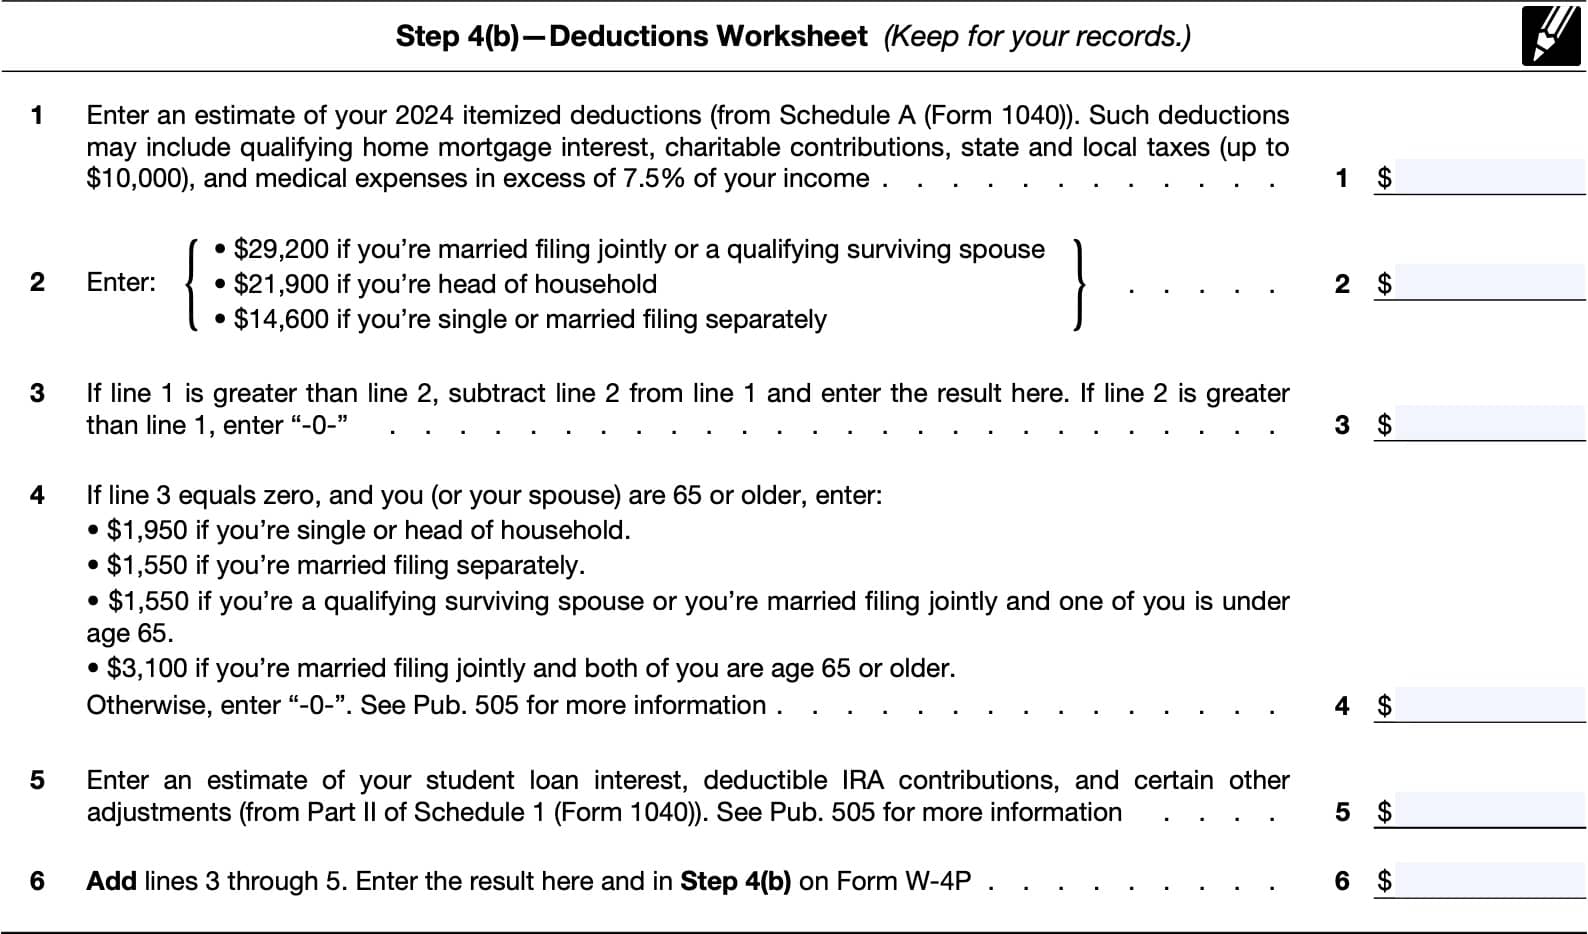 Step 4(b): Deductions worksheet